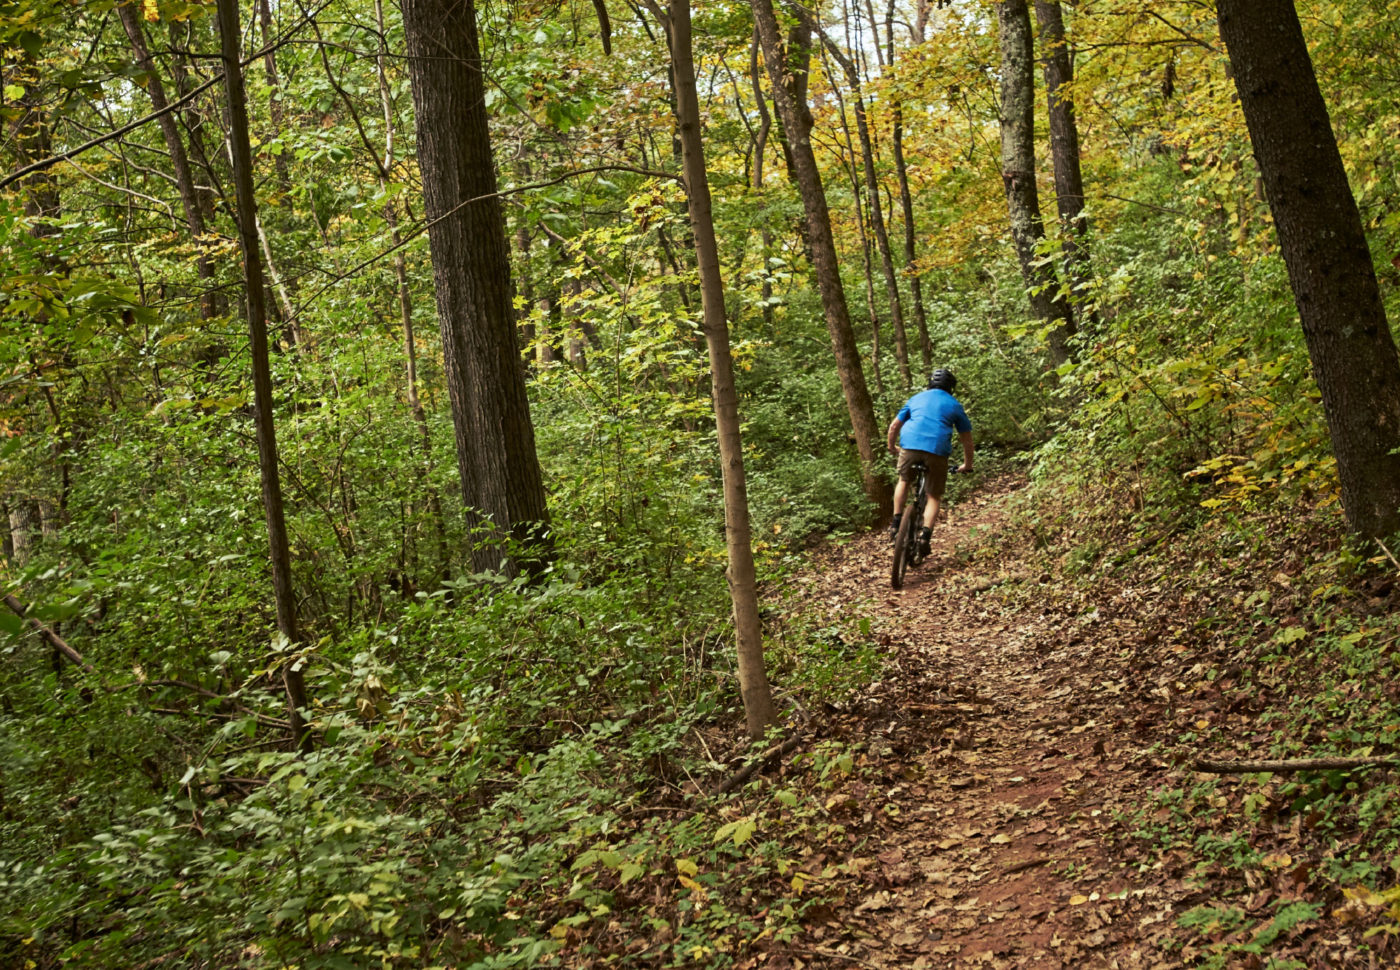 A man in blue shirt rides a mountain bike down a wooded path.